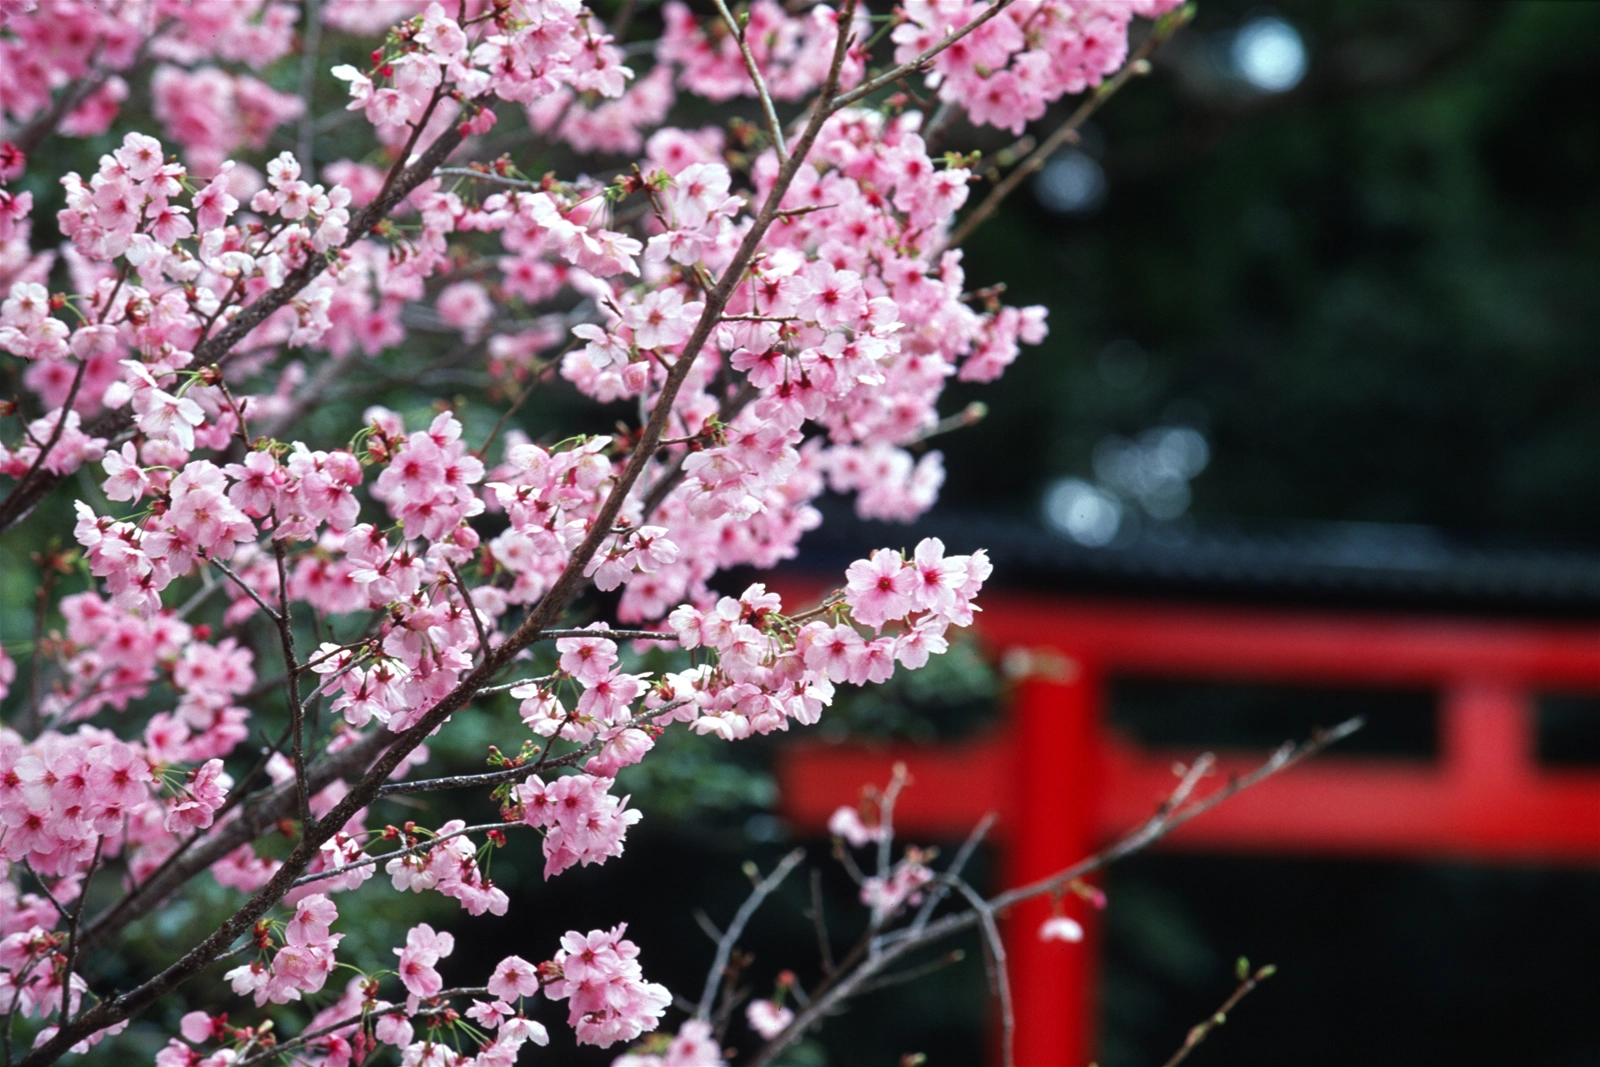 Dự kiến vào 2 ngày (9 và 10/4) lễ hội hoa anh đào sẽ được tổ chức nhằm giới thiệu vẻ đẹp của loài hoa mang ý nghĩa biểu tượng cho sự thanh cao và kiêu hãnh của con người Nhật Bản.